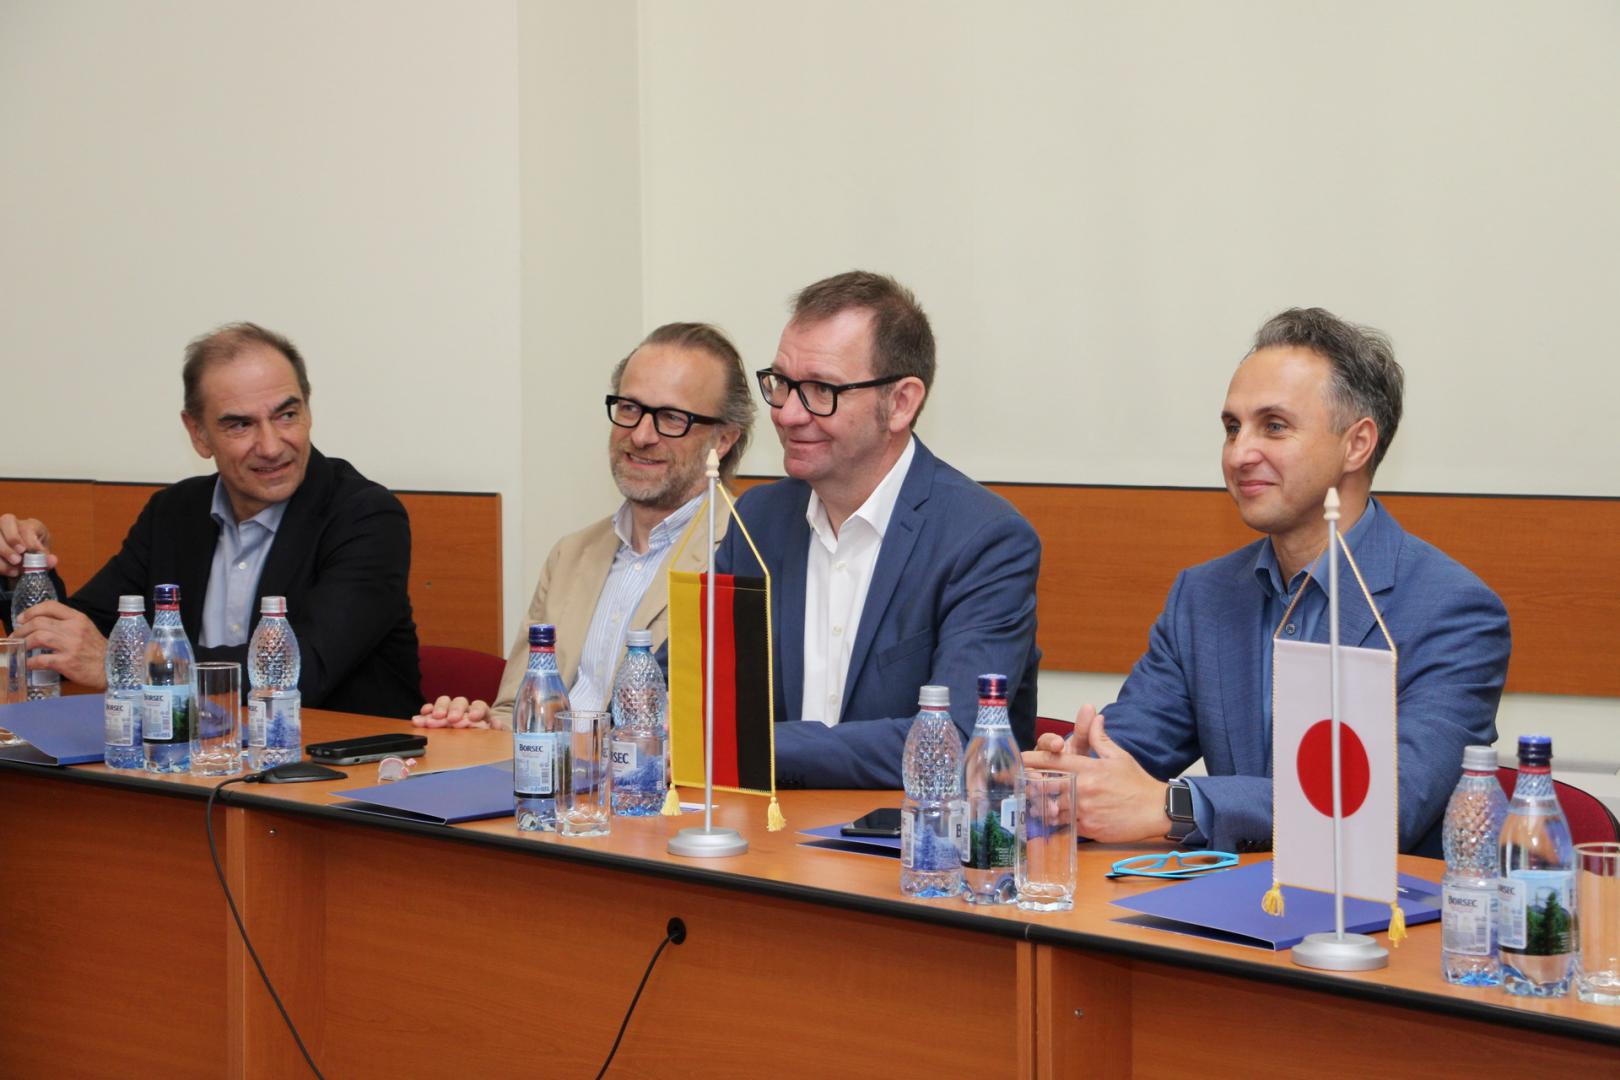 Membrii grupului BMW TechWorks România s-au întâlnit cu conducerea Universității Tehnice din Cluj-Napoca